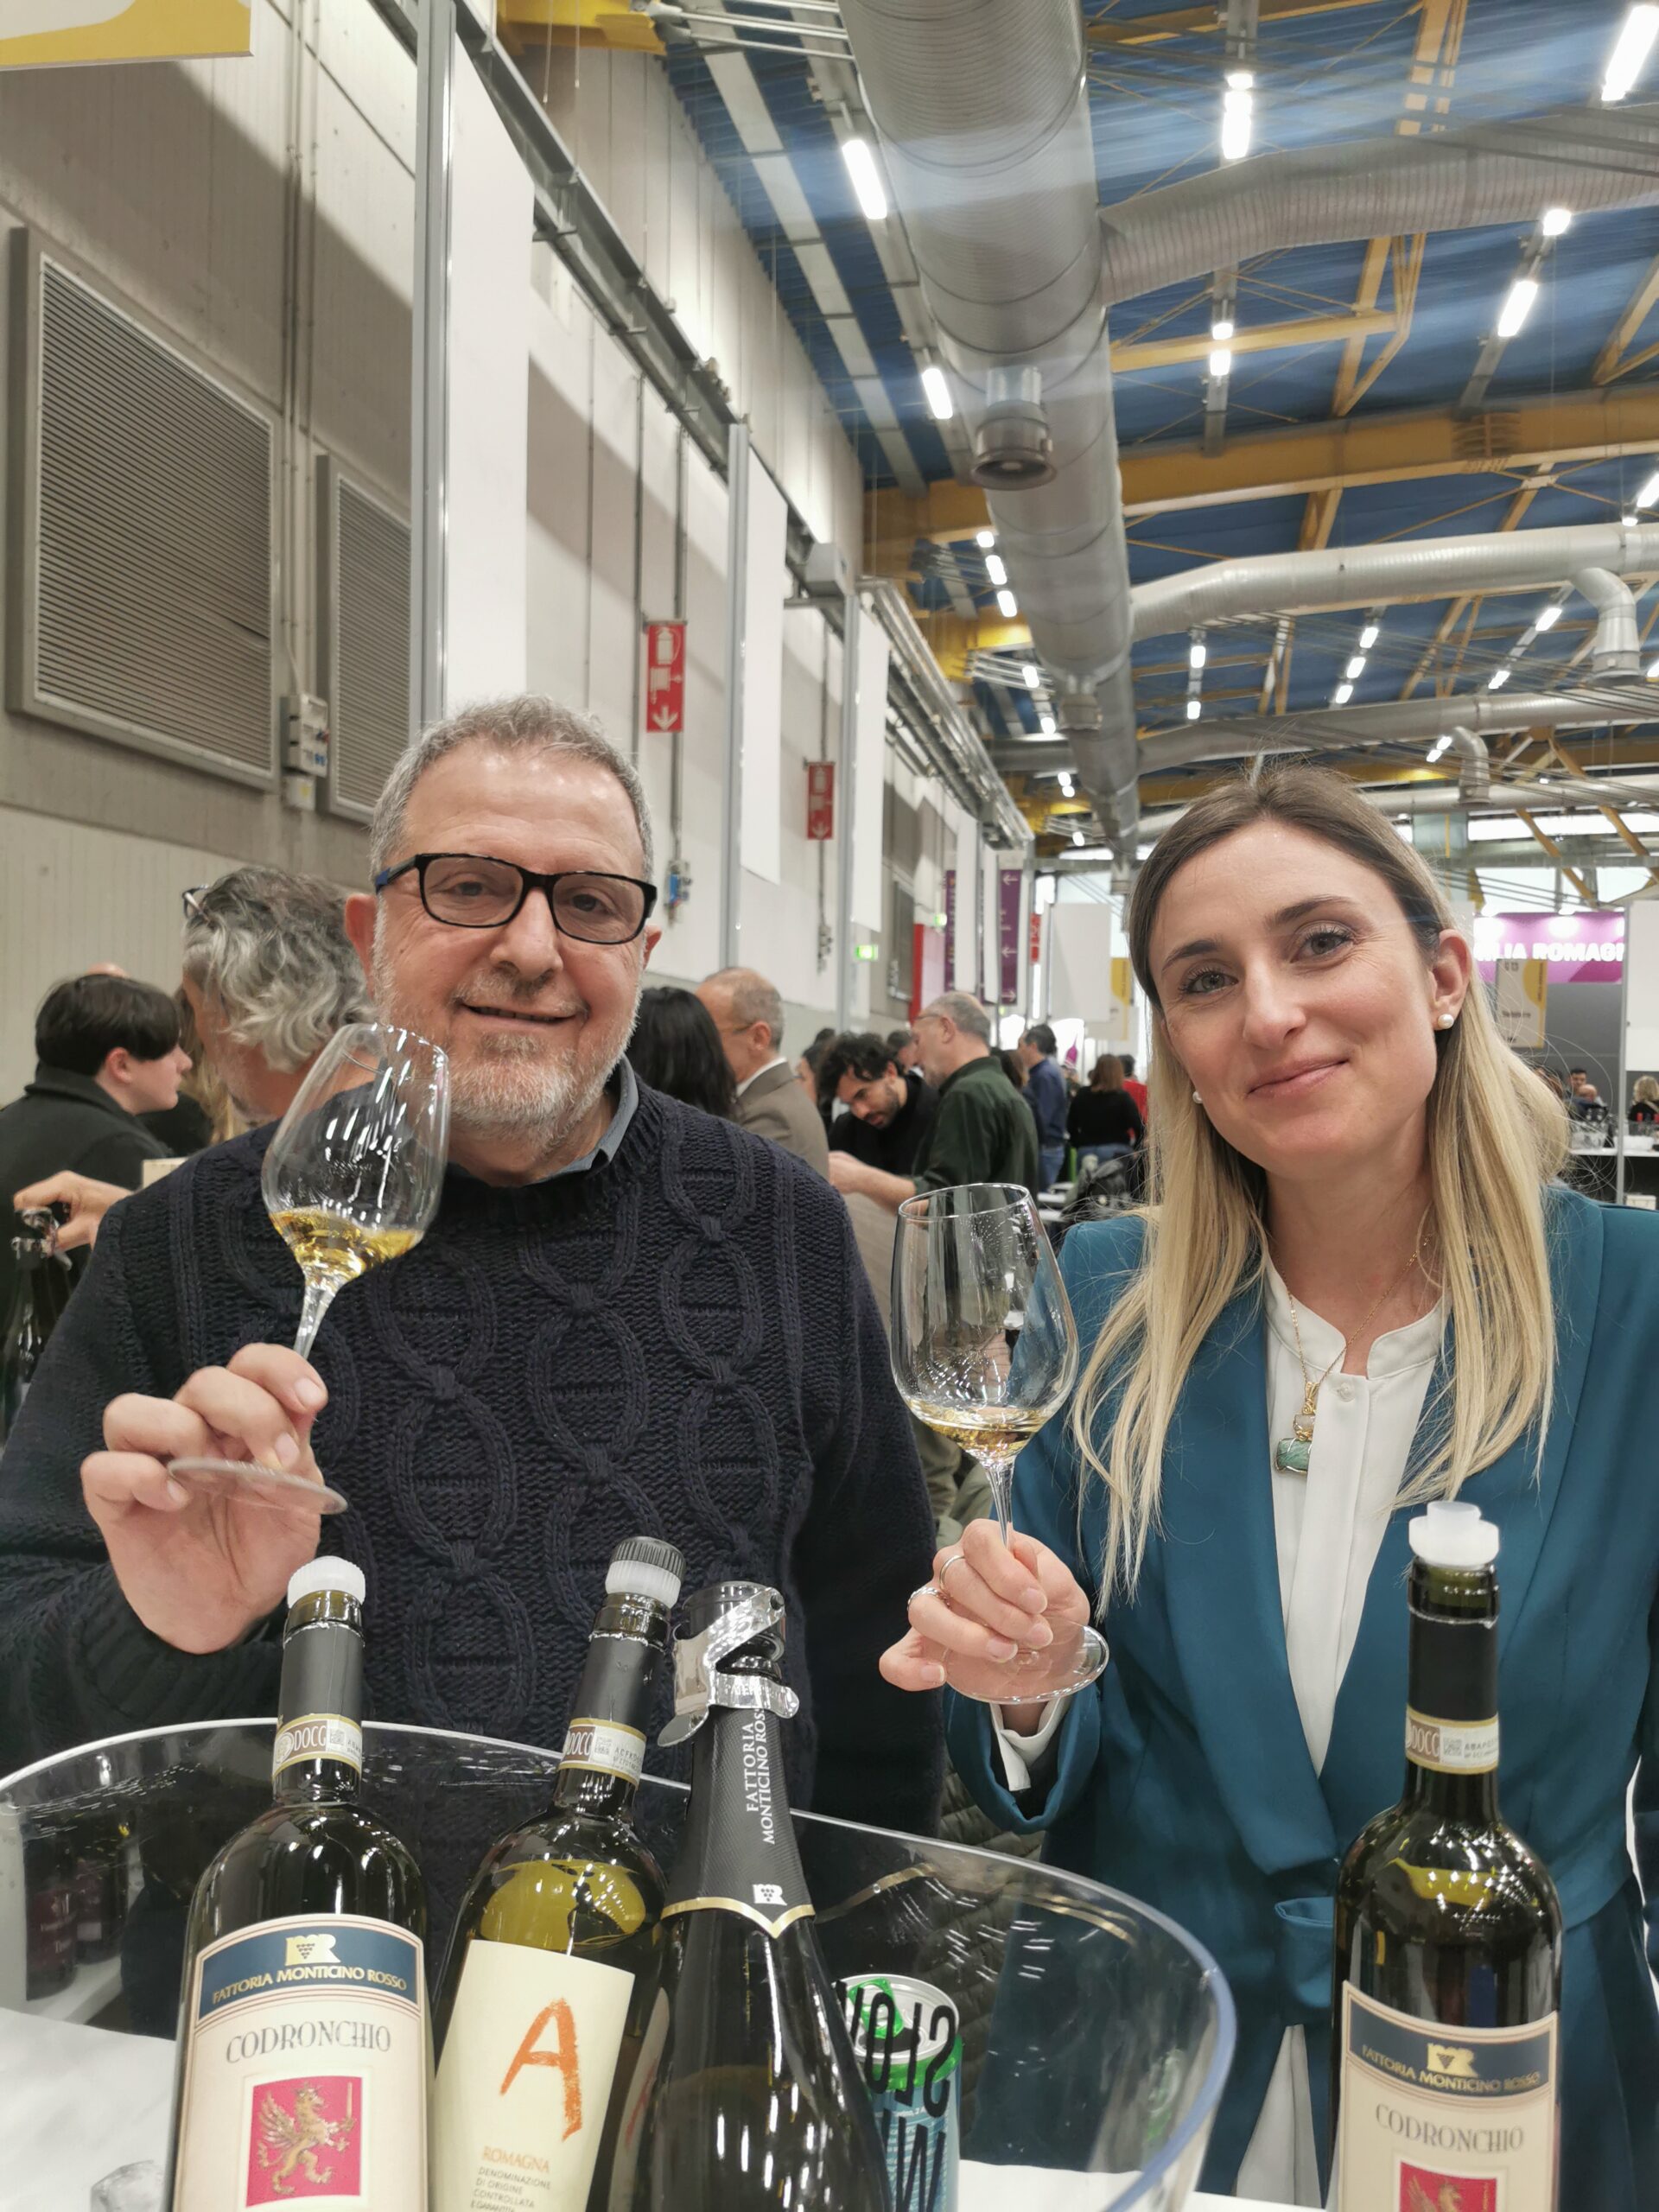 PRODUTTORE FATTORIA DI MONTICINO E FOTO CODRONCHIO, immagine di Elsa Leandri, articolo: Slow Wine Fair 2023: Focus su la Romagna e Albana